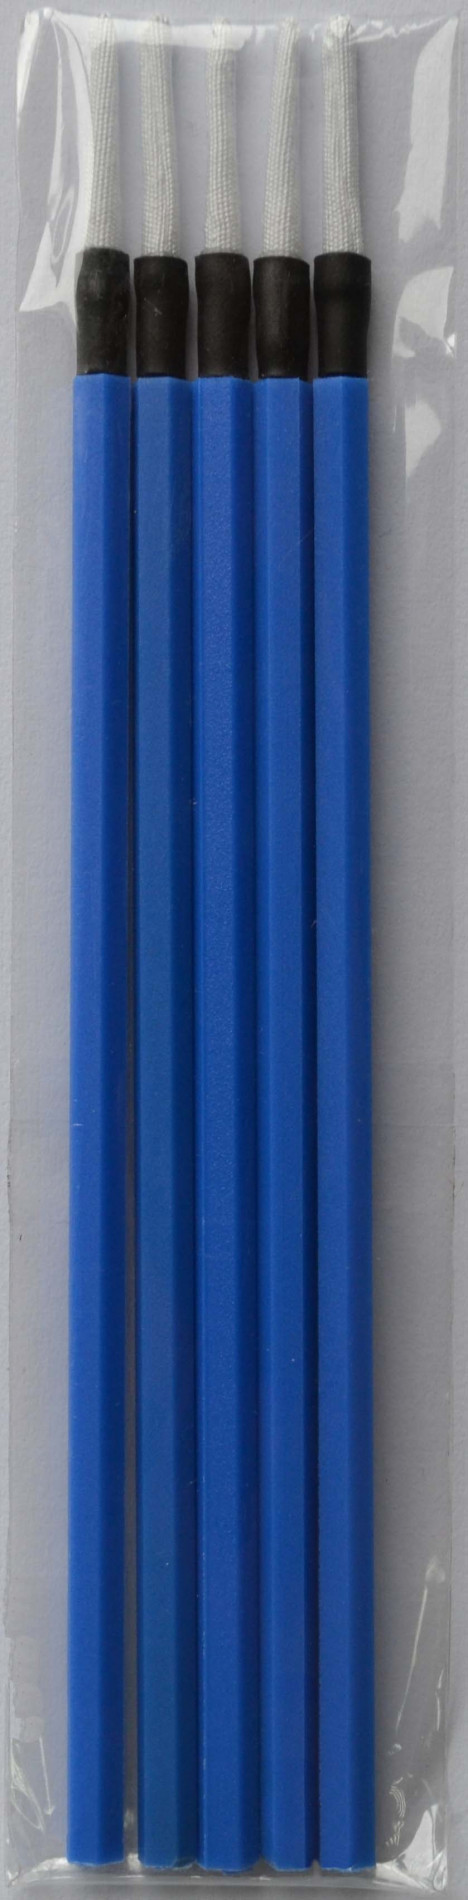 Grandway CLN2-002-02 - палочки очистительные безворсовые 1,25мм для оптических разъемов LC/MU, 5 шт/уп